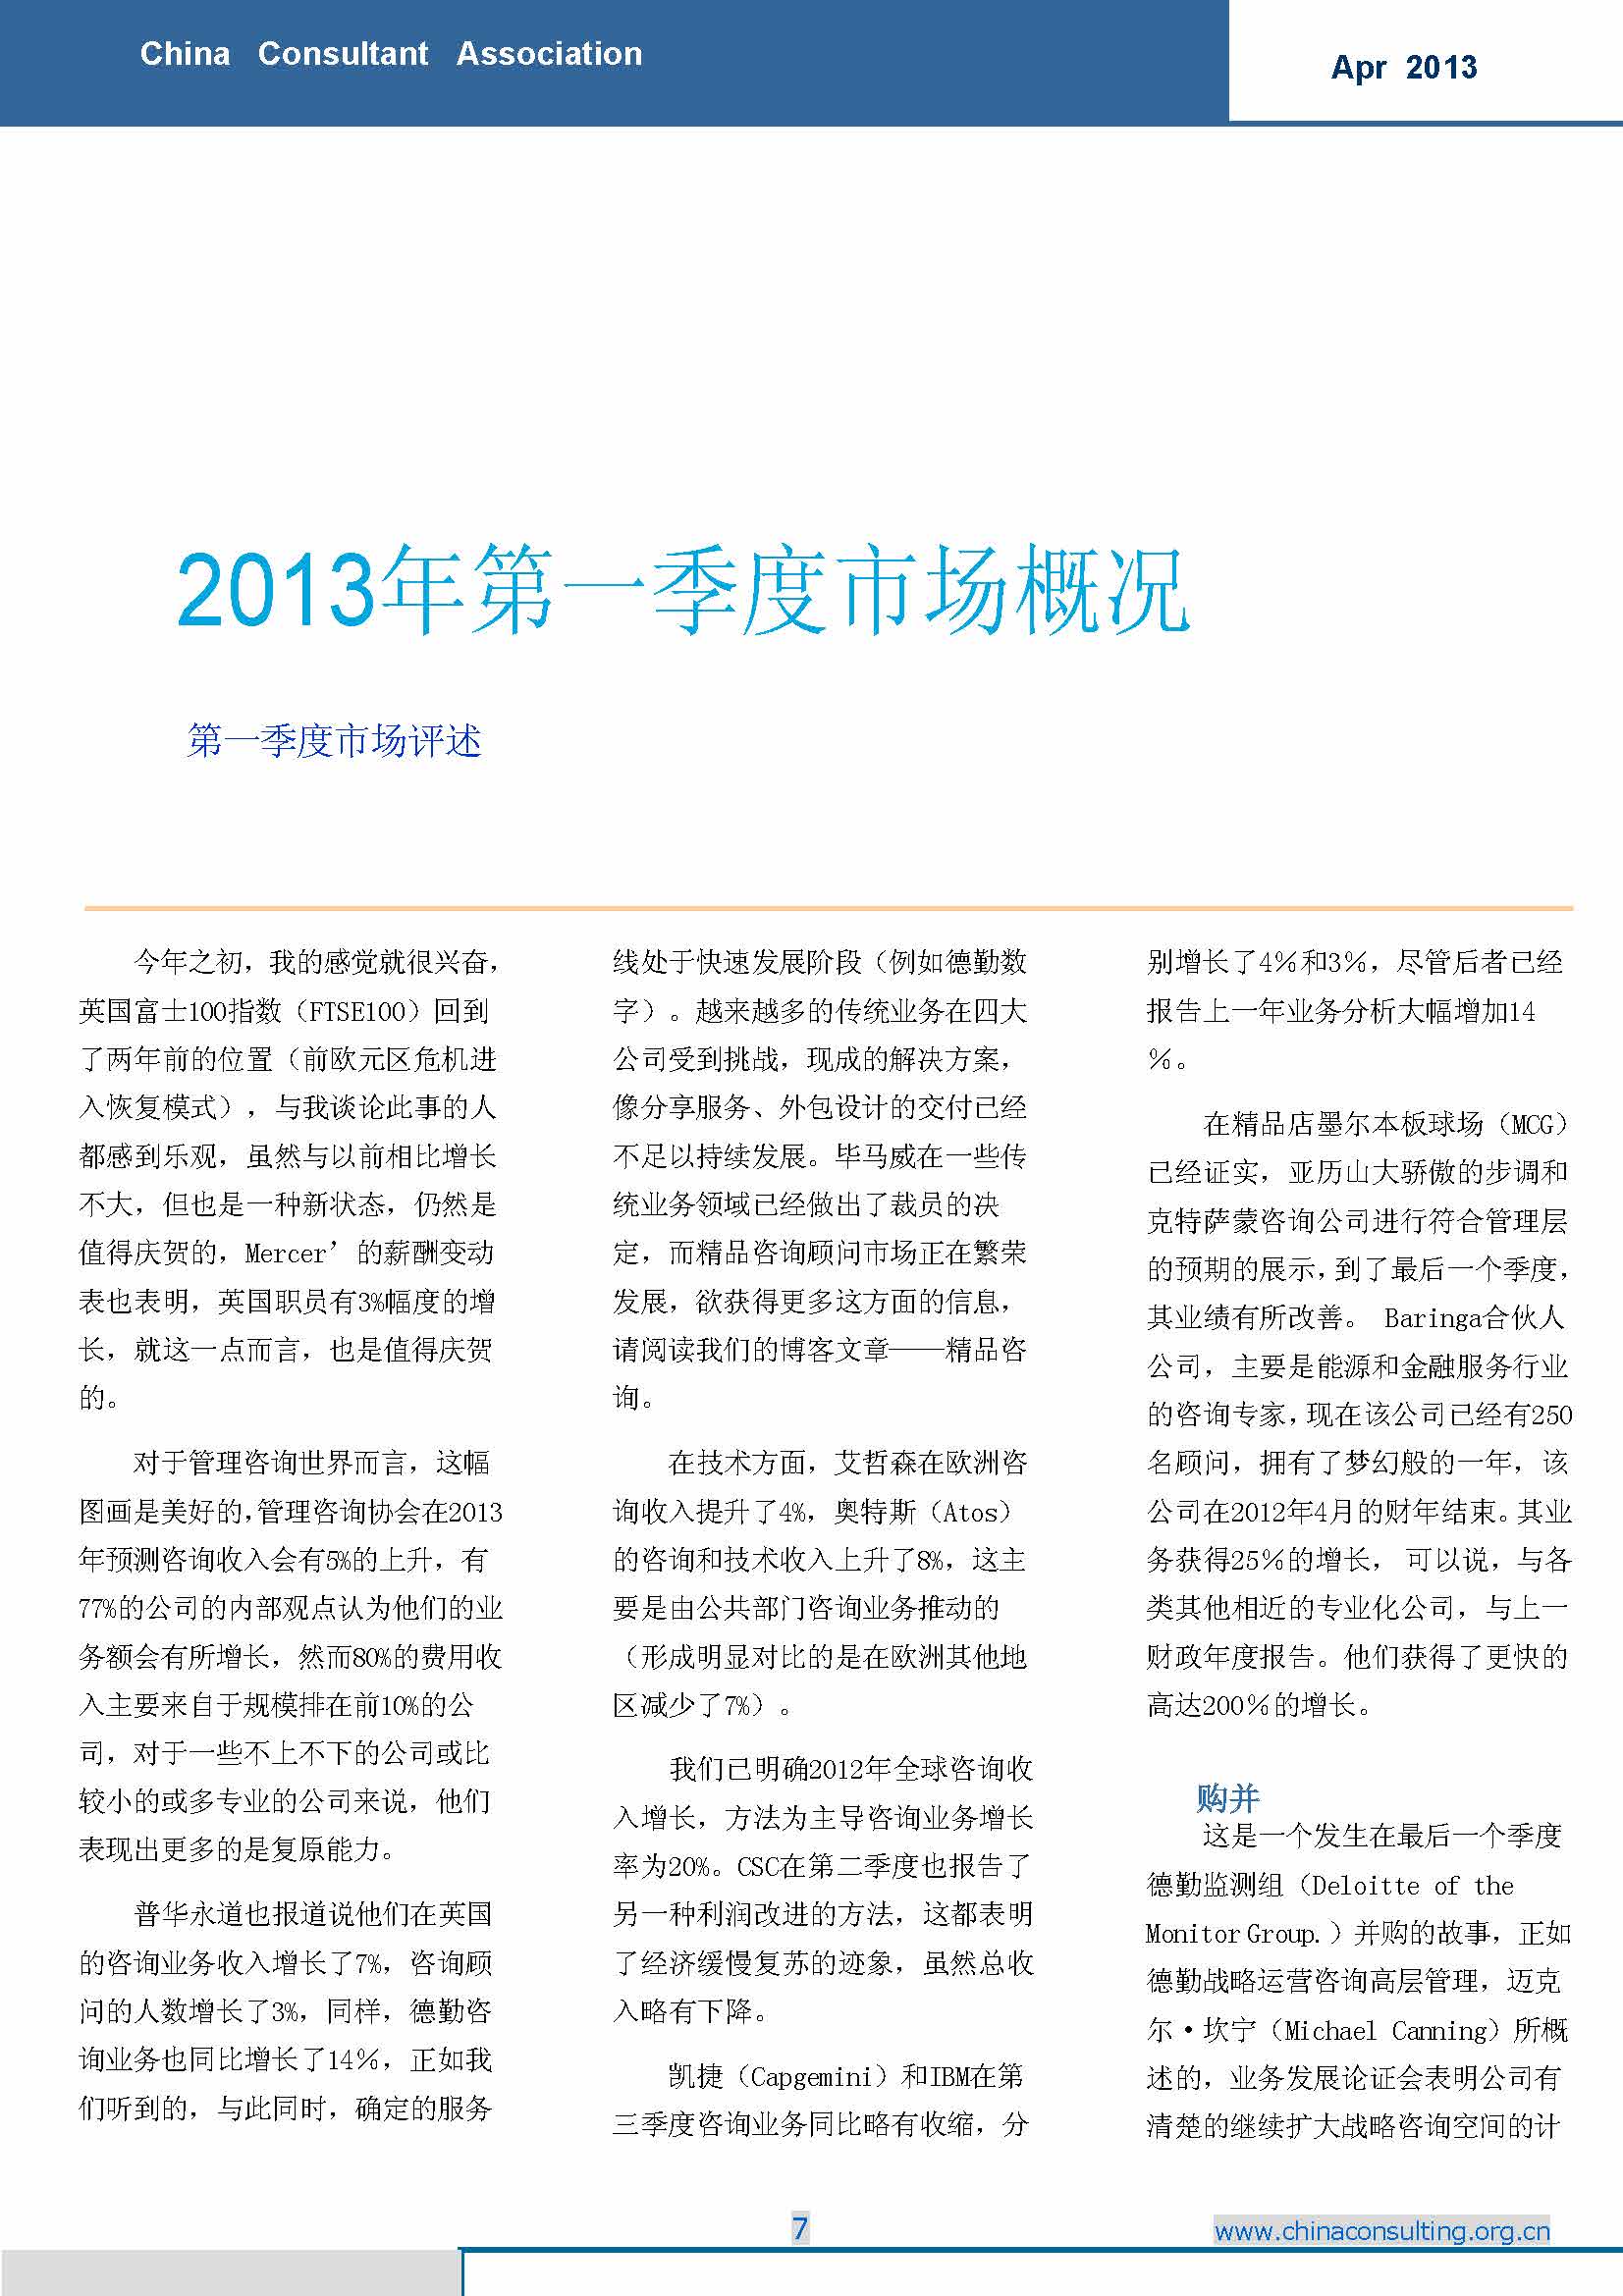 12中国科技咨询协会国际快讯（第十二期）_页面_09.jpg